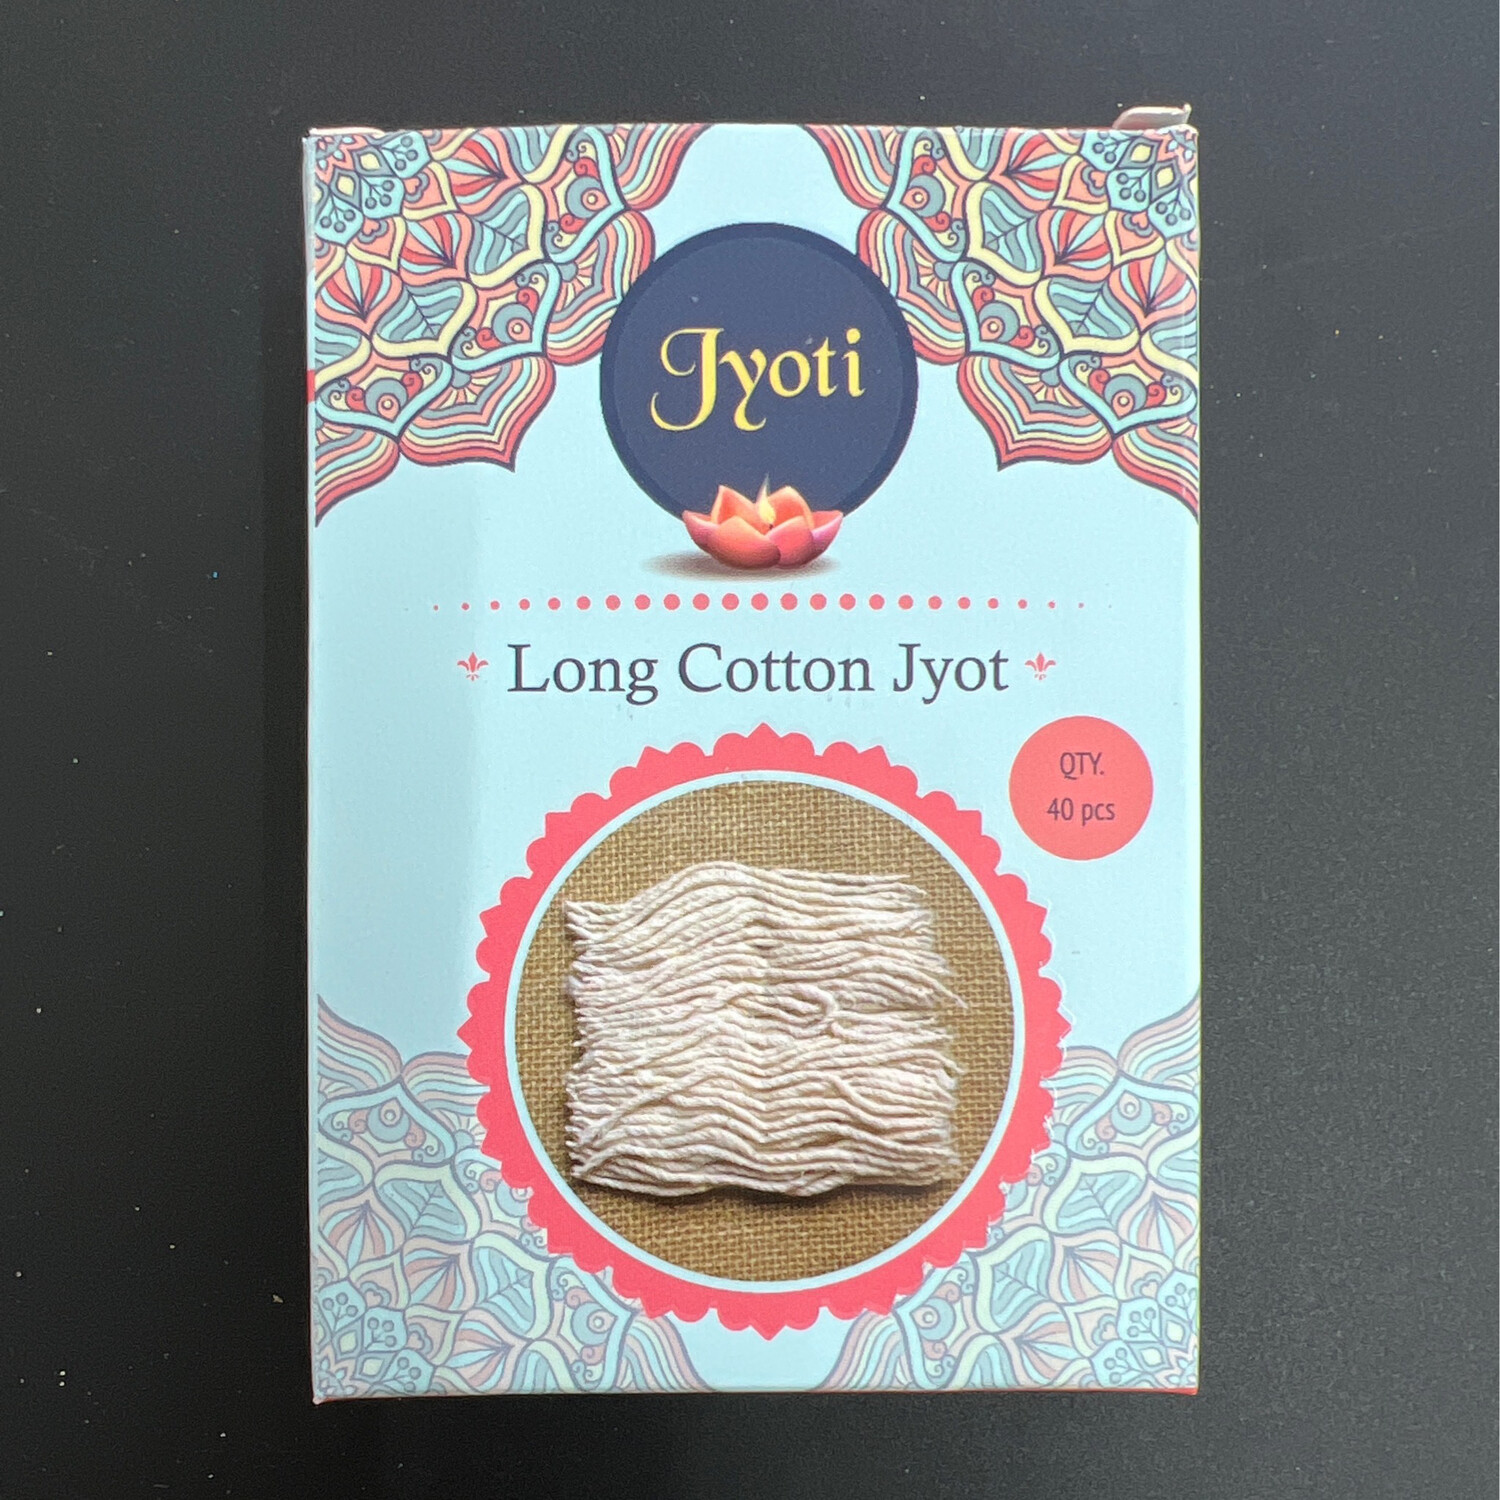 Jyoti Long Cotton Jyot 40pcs